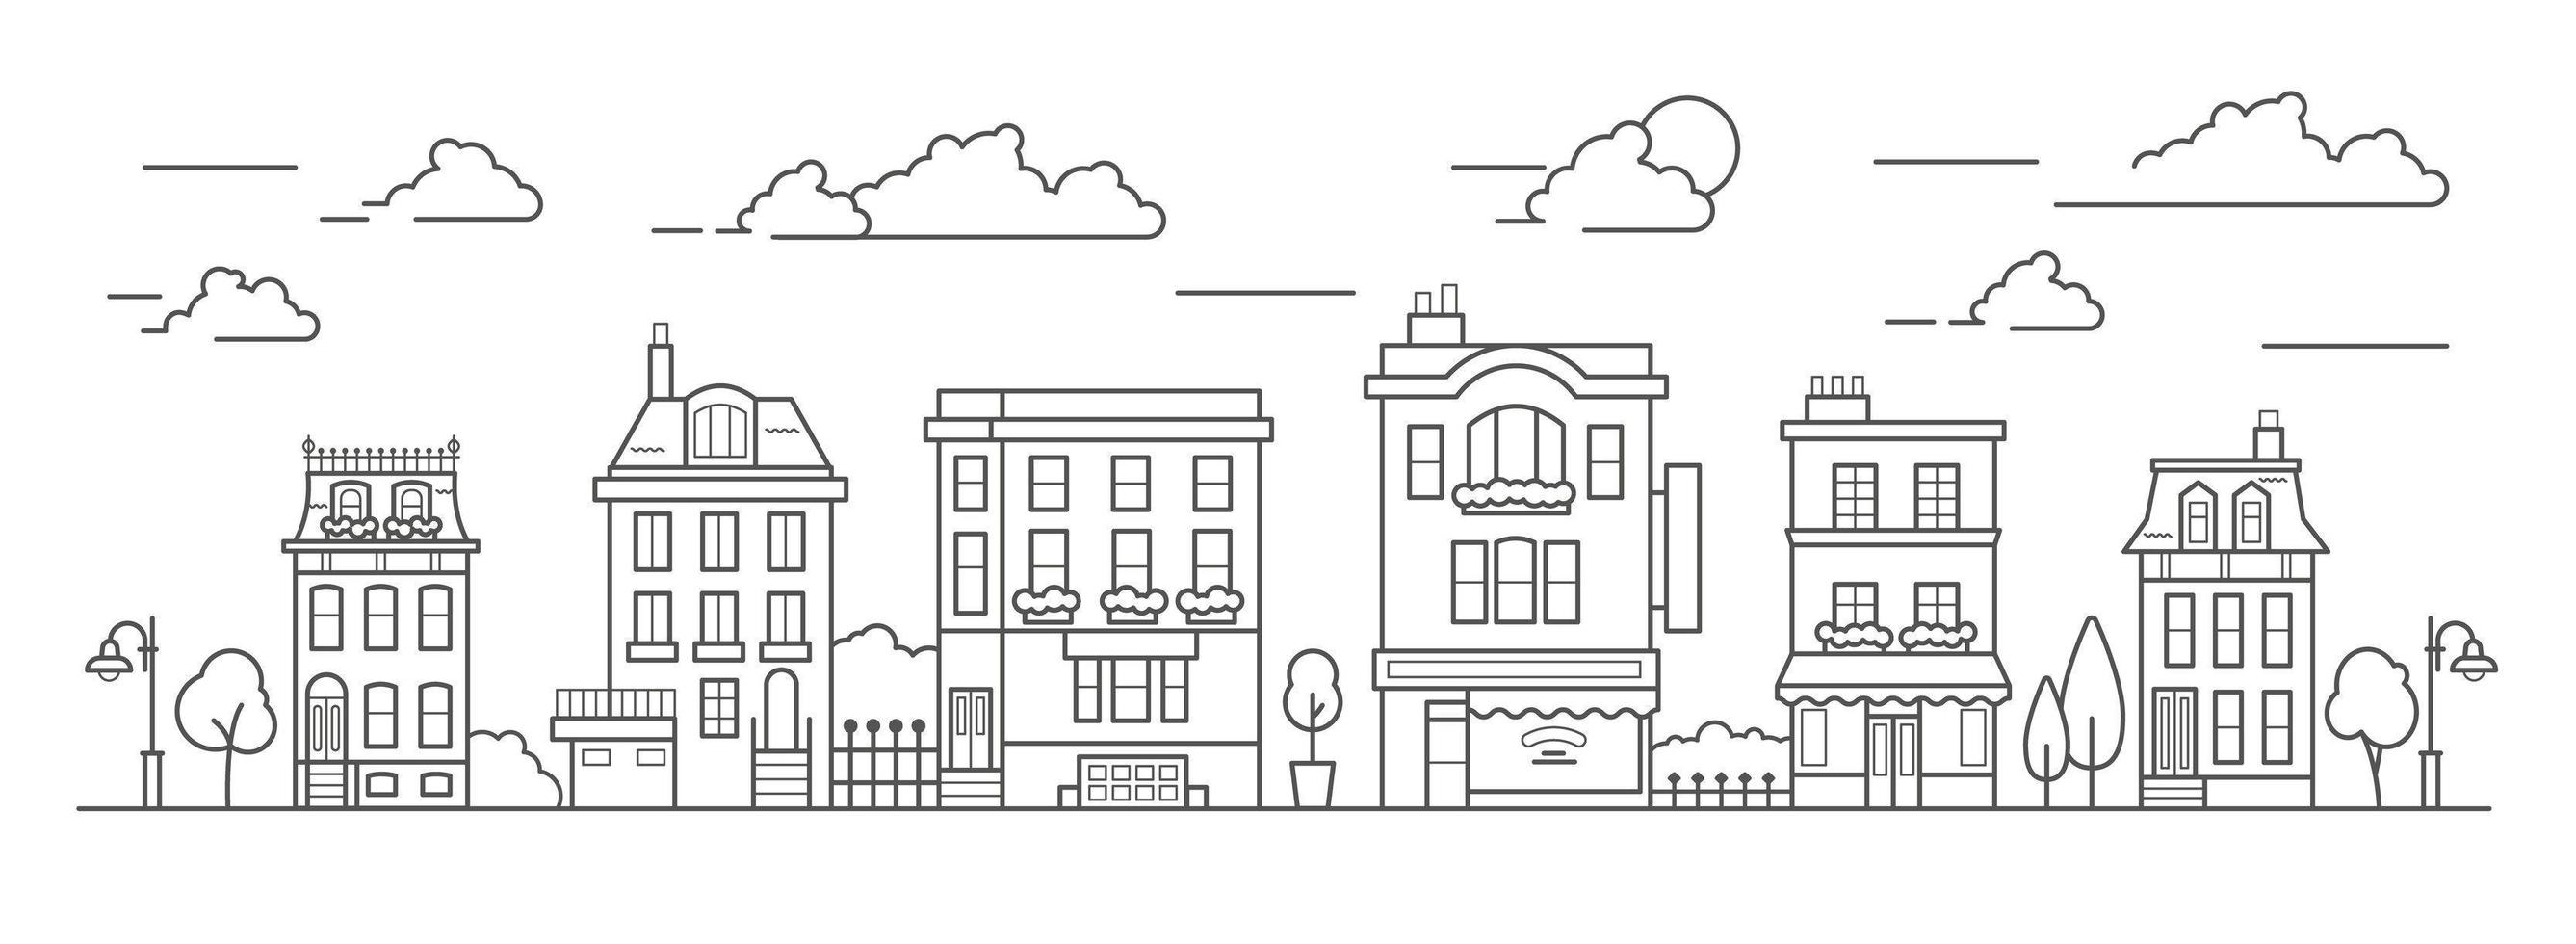 Landschaft im Stil der Strichzeichnungen. Umrissstraße mit Häusern, Gebäude, Baum und Wolken. Café, Apotheke, Hotel und Bushaltestelle. Vektor